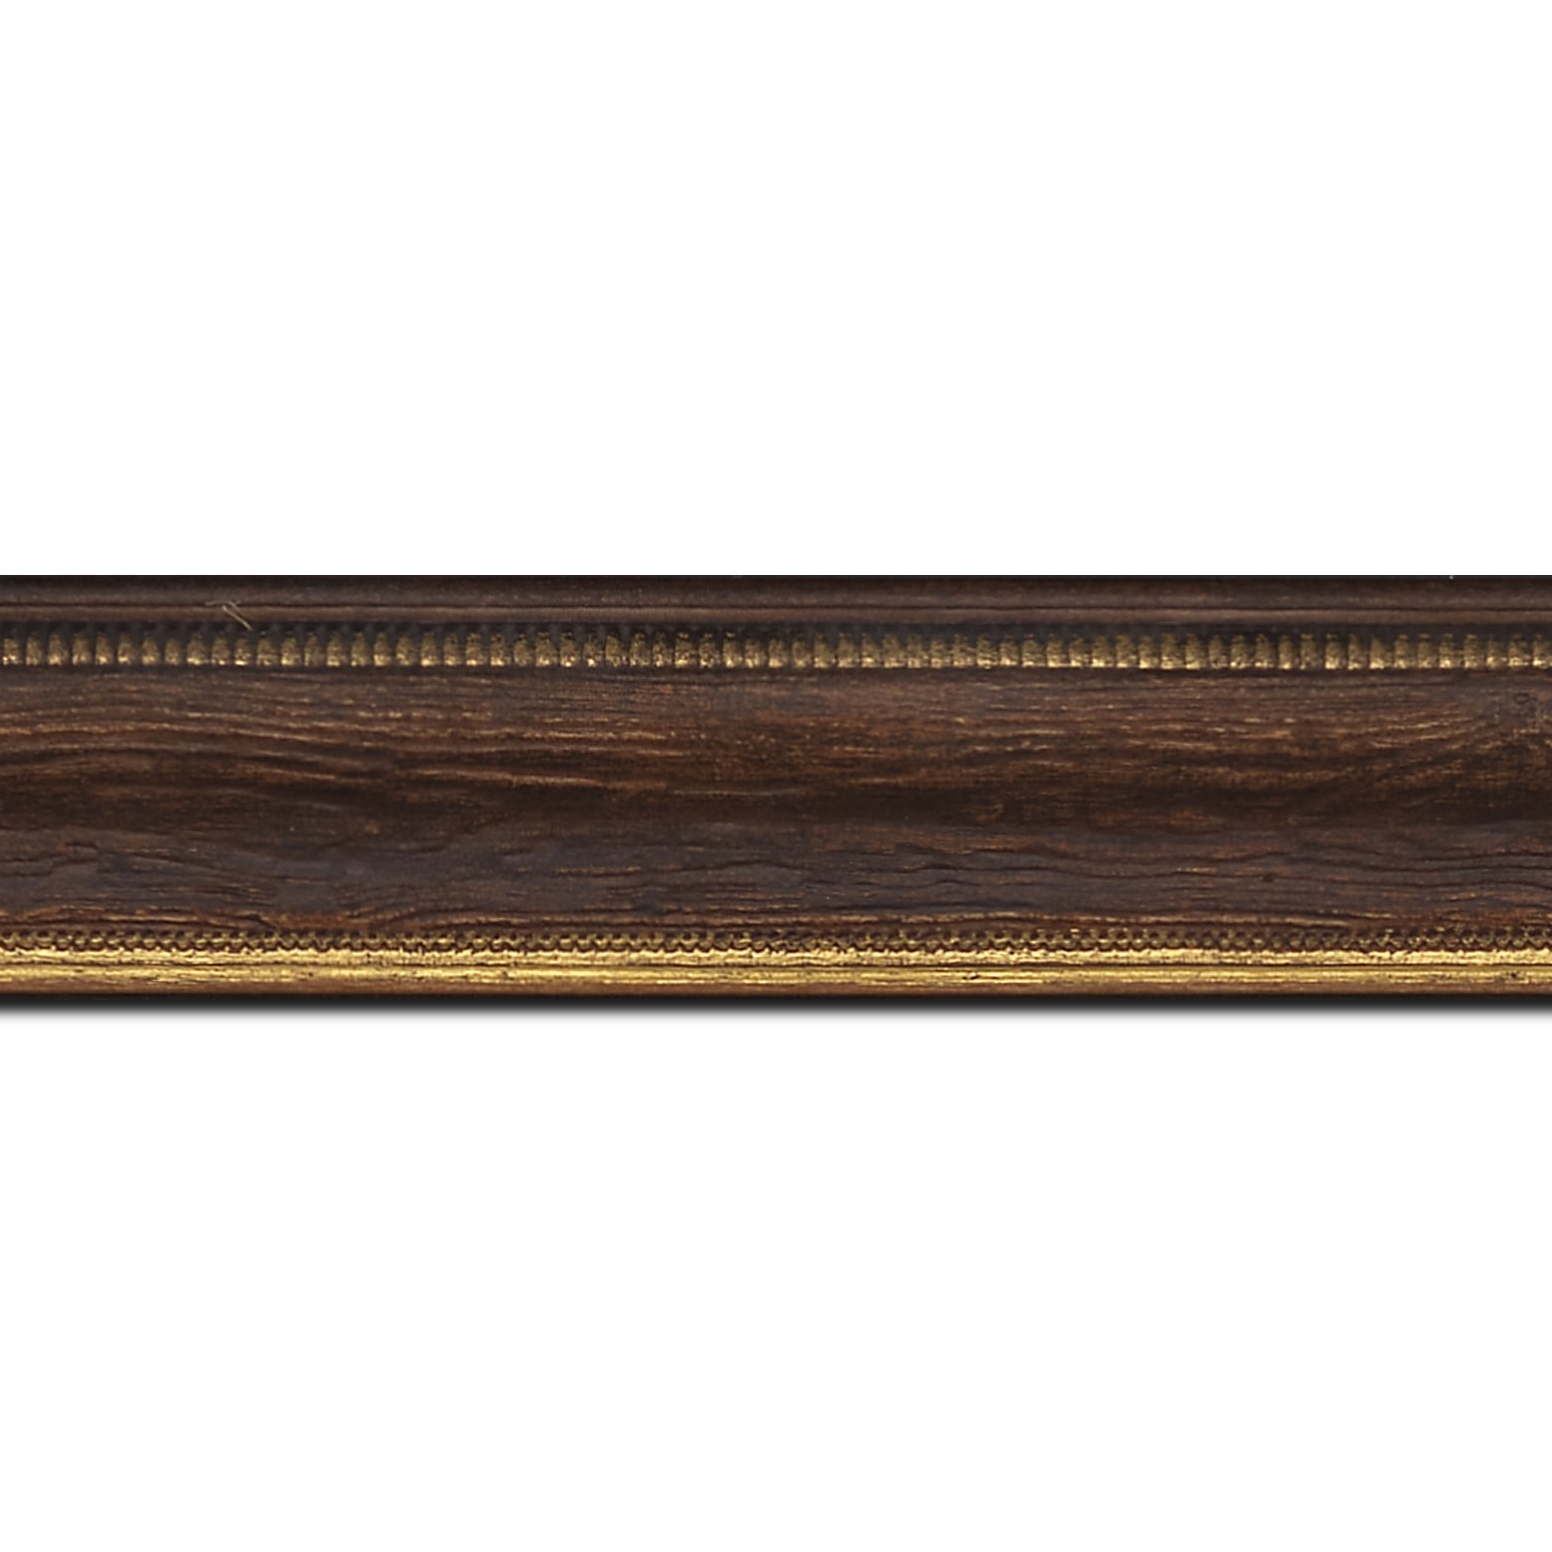 Baguette longueur 1.40m bois profil incurvé largeur 4.1cm couleur marron foncé aspect veiné liseret or